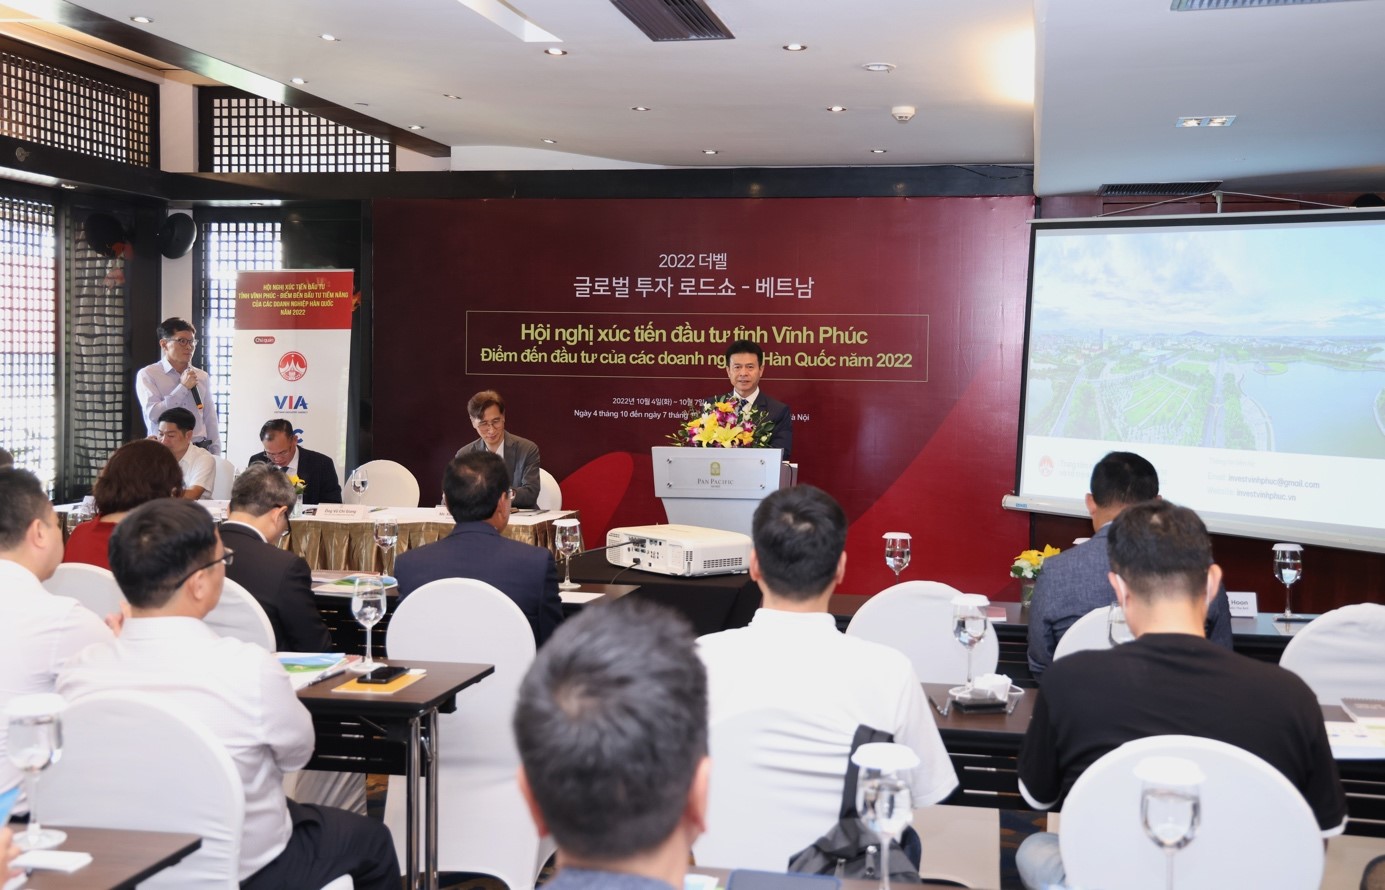 Phó Chủ tịch UBND tỉnh Vũ Chí Giang phát biểu khai mạc Hội nghị xúc tiến đầu tư Vĩnh Phúc - Điểm đến đầu tư của các doanh nghiệp Hàn Quốc năm 2022. 